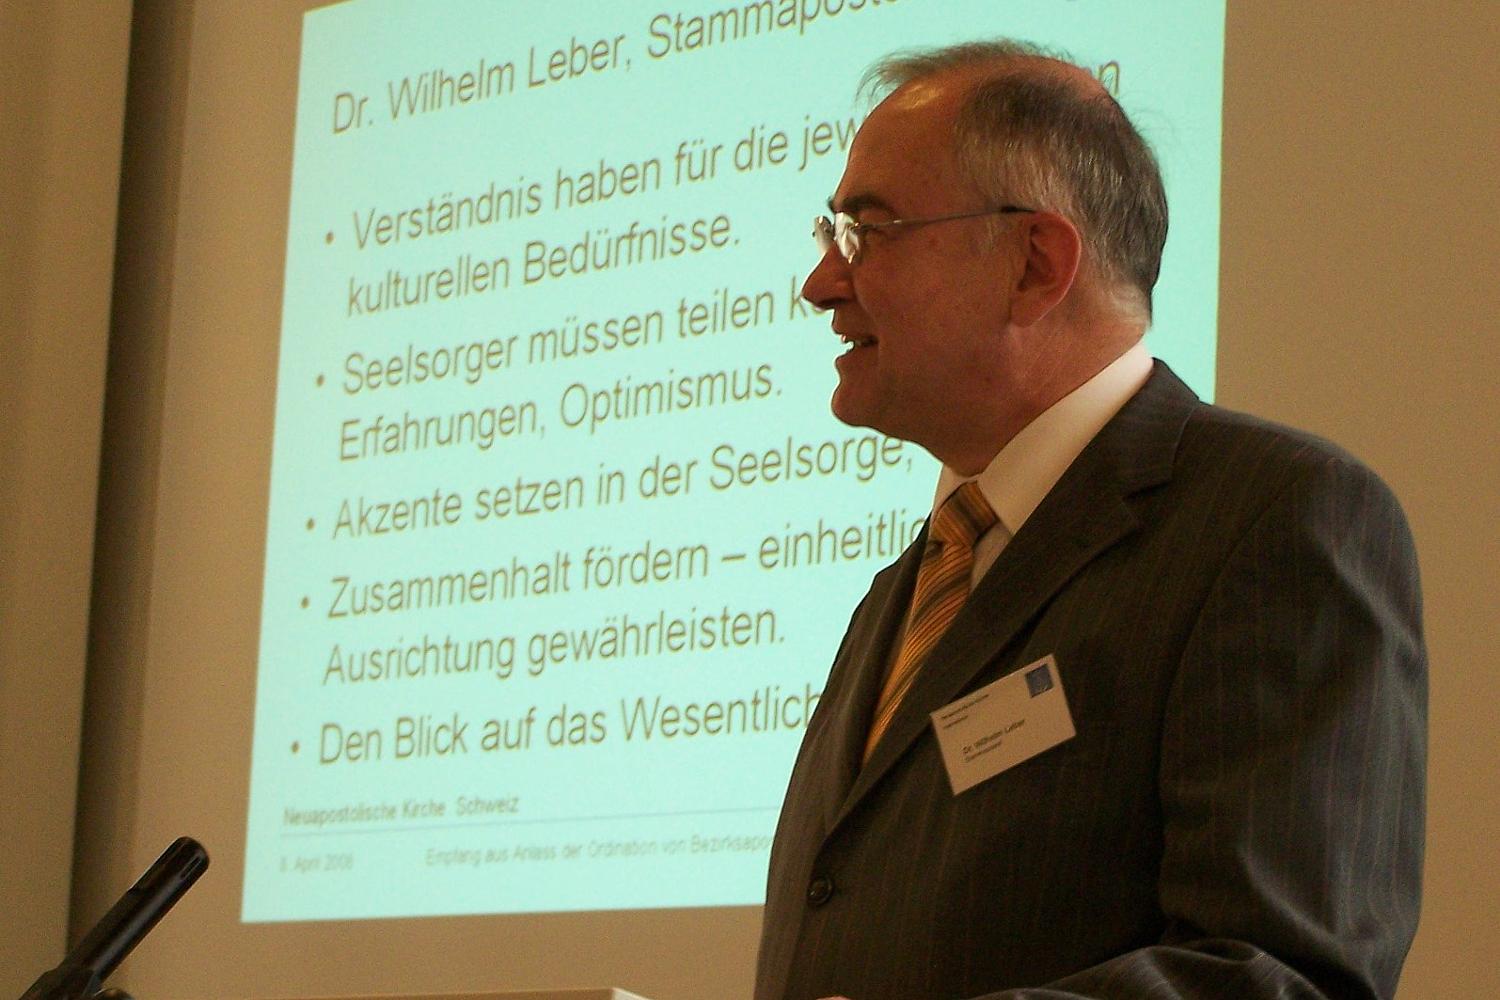 Stammapostel Wilhelm Leber: "Ich freue mich auf die Zusammenarbeit" (Fotos: NAKI)